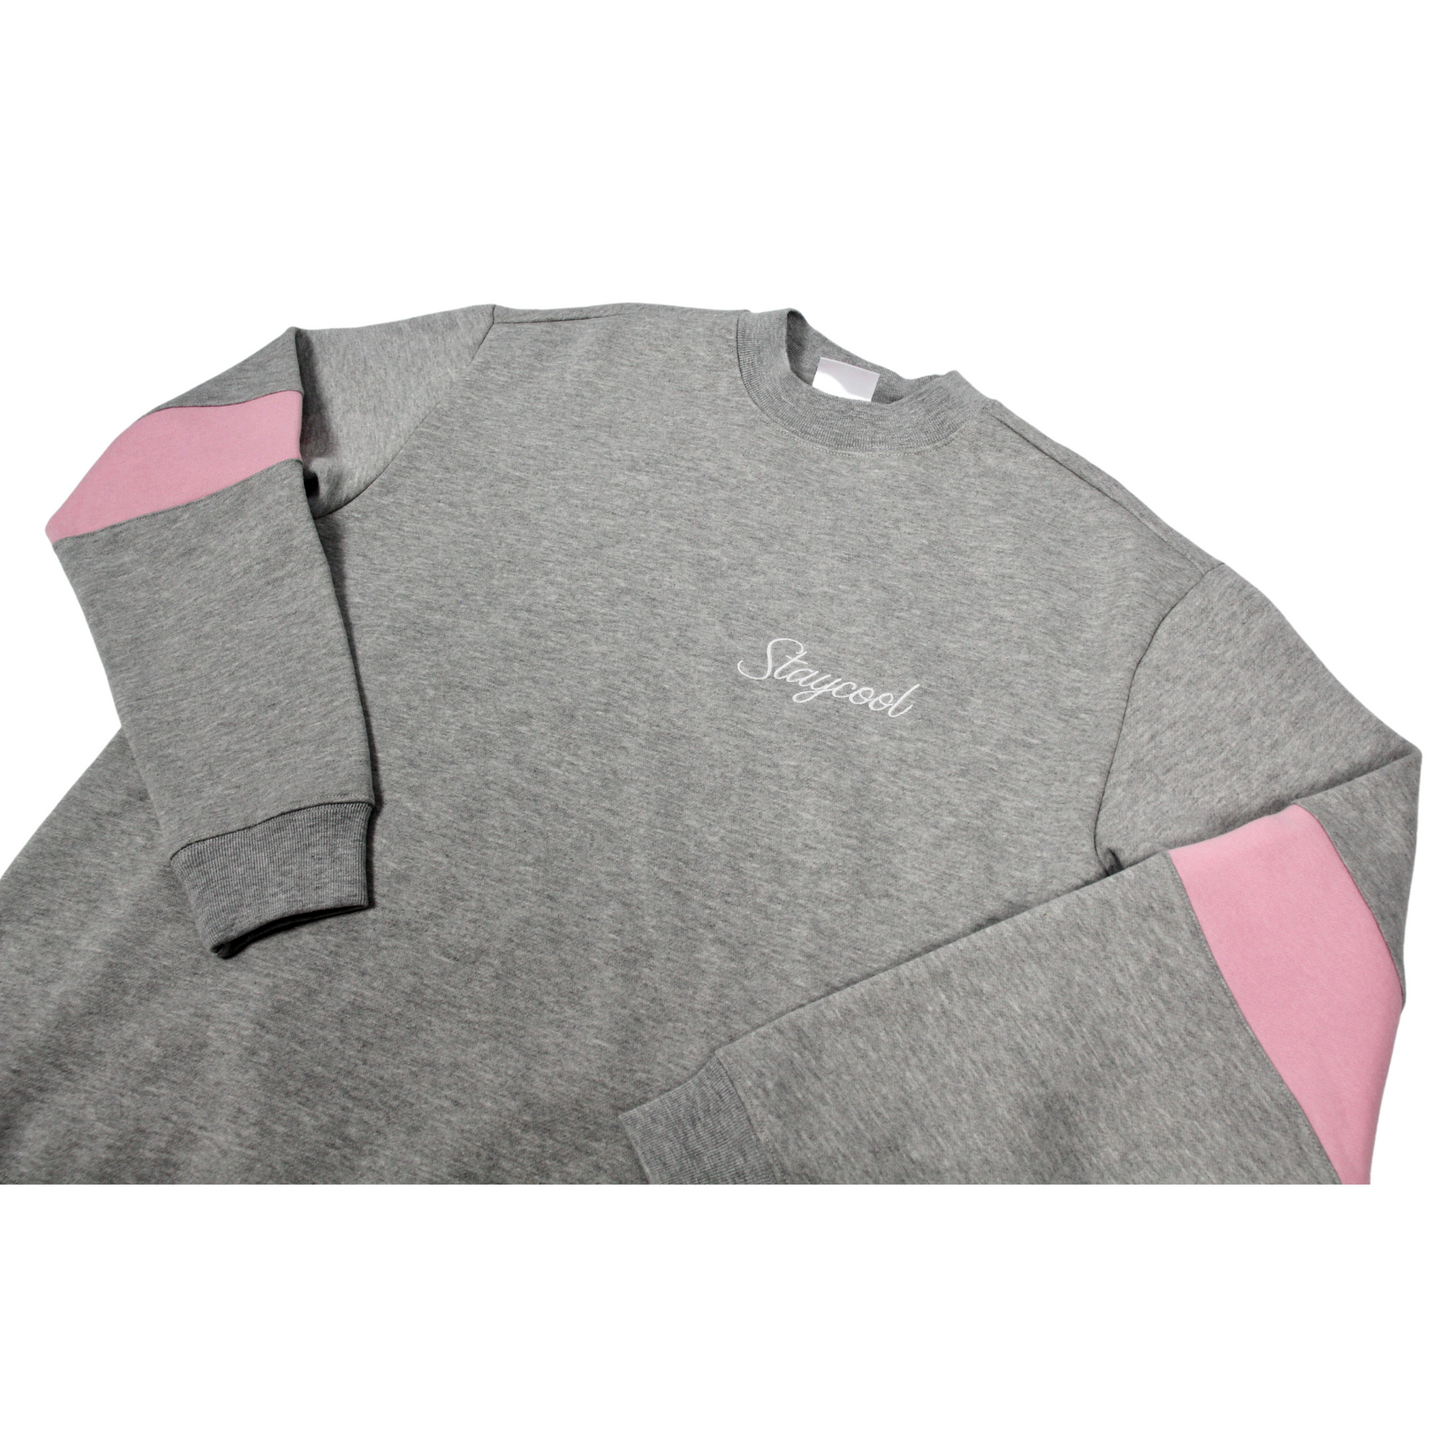 Staycoolnyc Collegiate Sweatshirt (Grey/Pink)